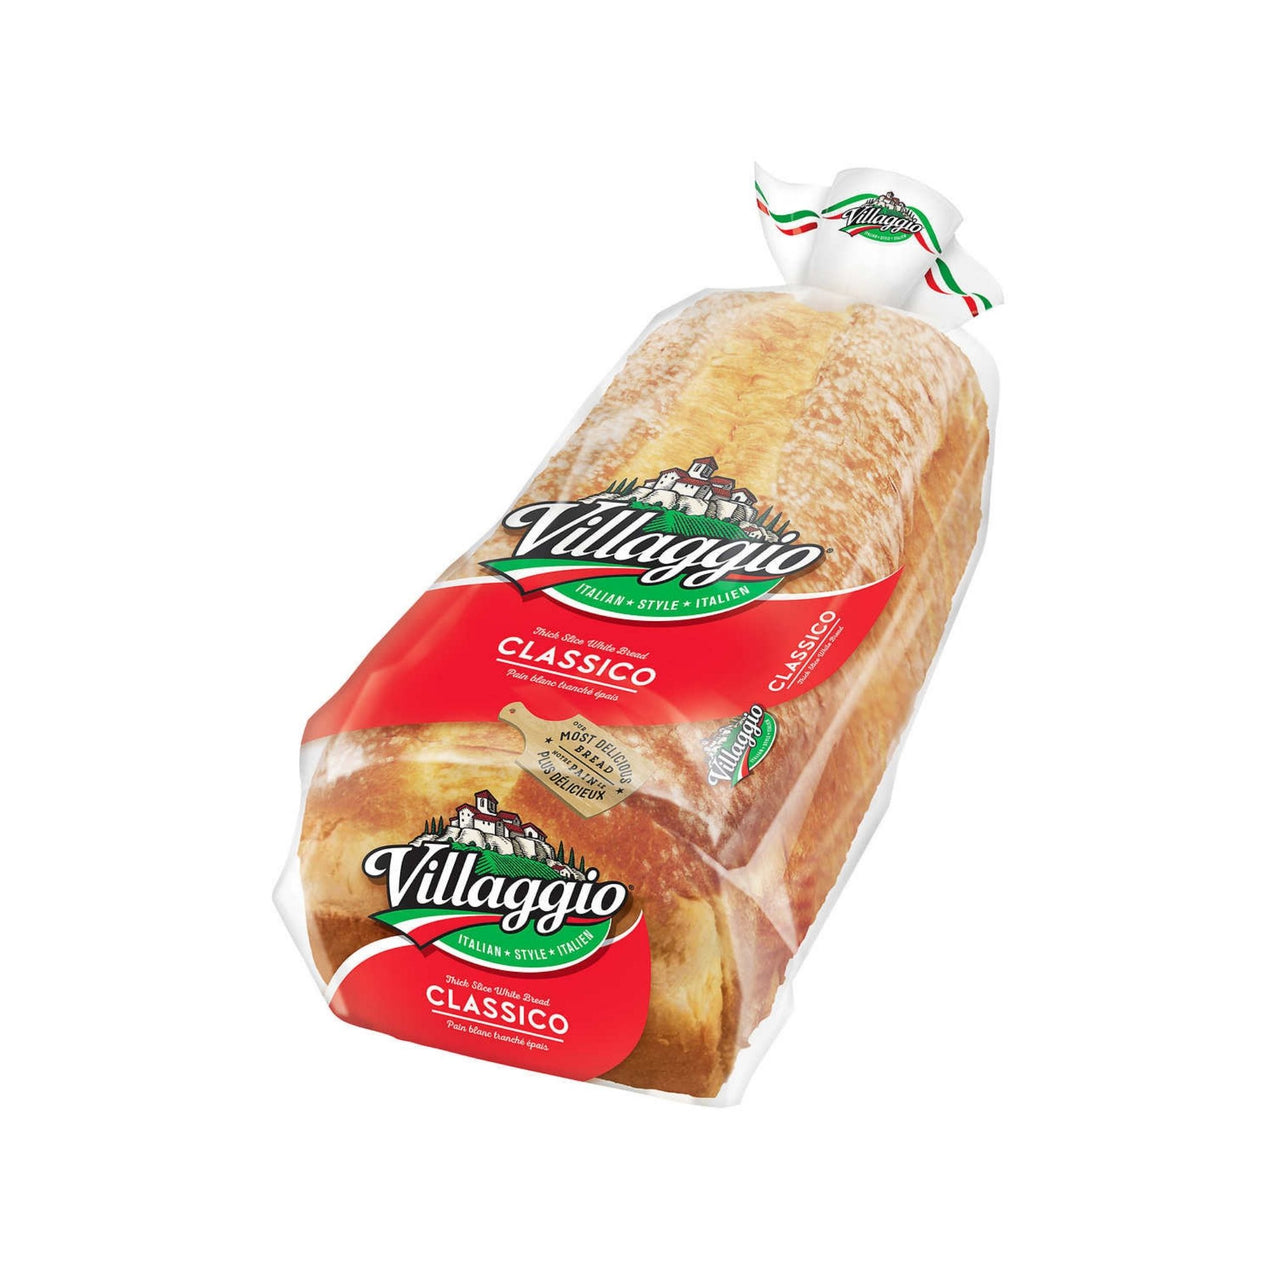 Image of Villaggio Italian White Bread 2pack